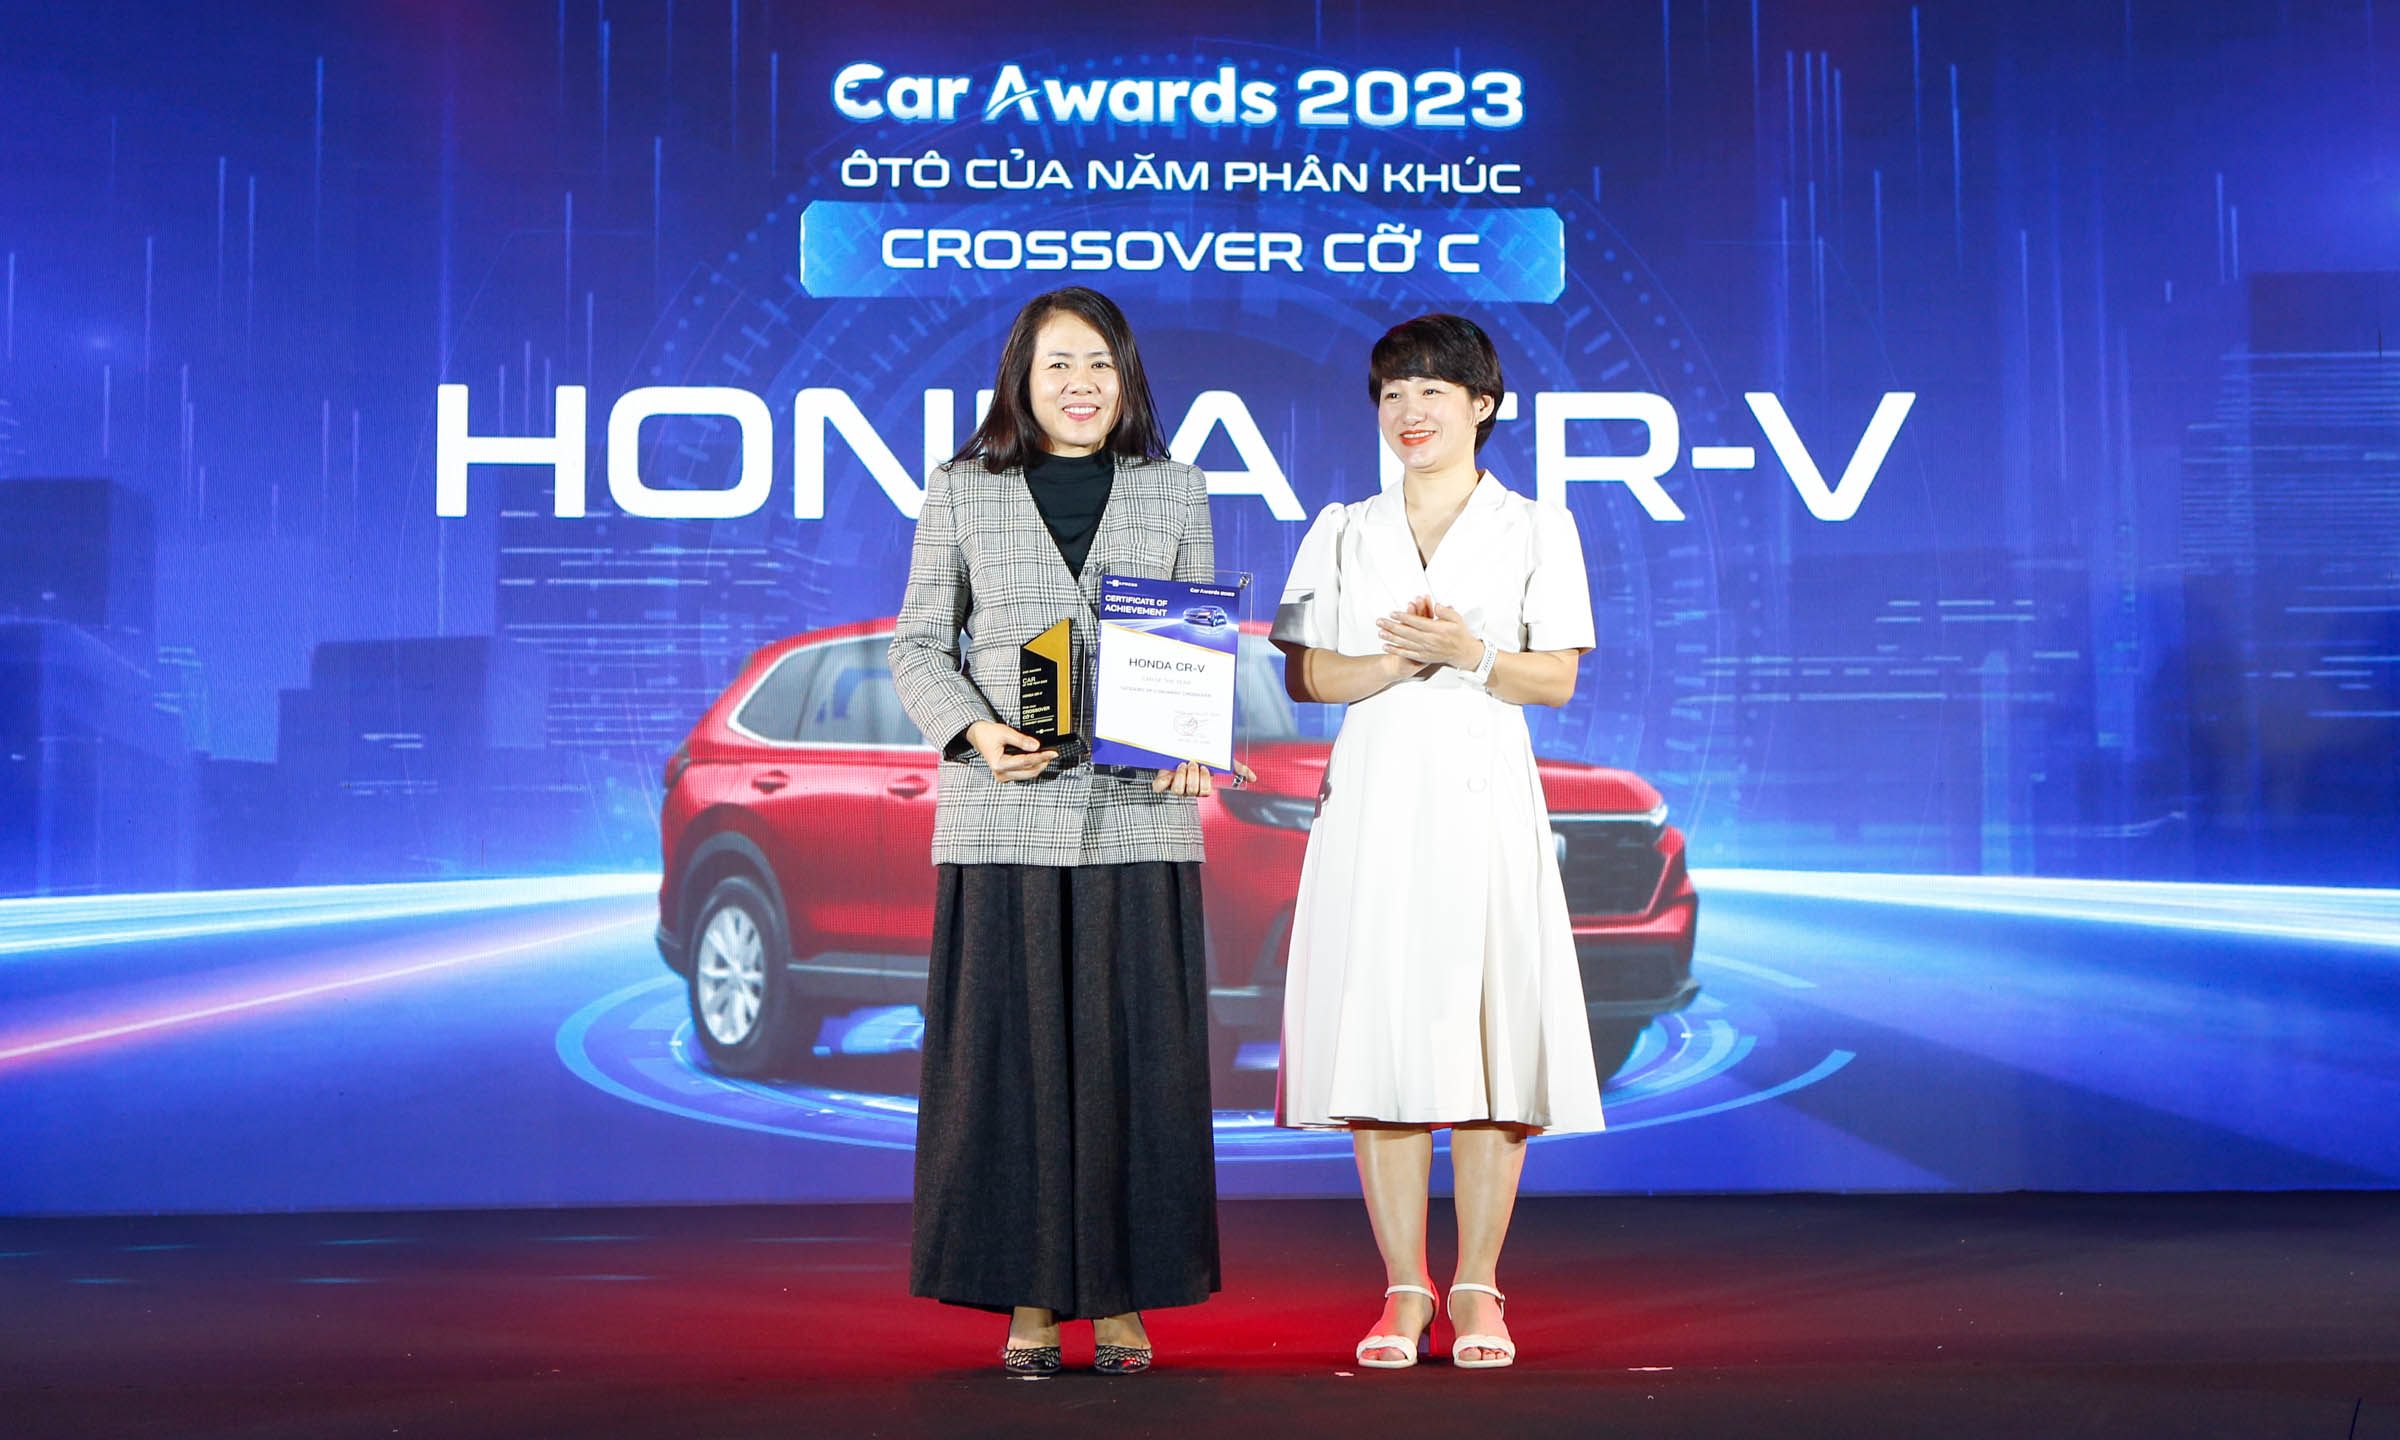 Honda CR-V vinh dự nhận Giải thưởng “Ô tô của năm” toàn thị trường và “Ô tô của năm” phân khúc xe Crossover cỡ C Honda City vinh dự nhận Giải thưởng “Ô tô của năm” phân khúc xe gầm thấp cỡ B